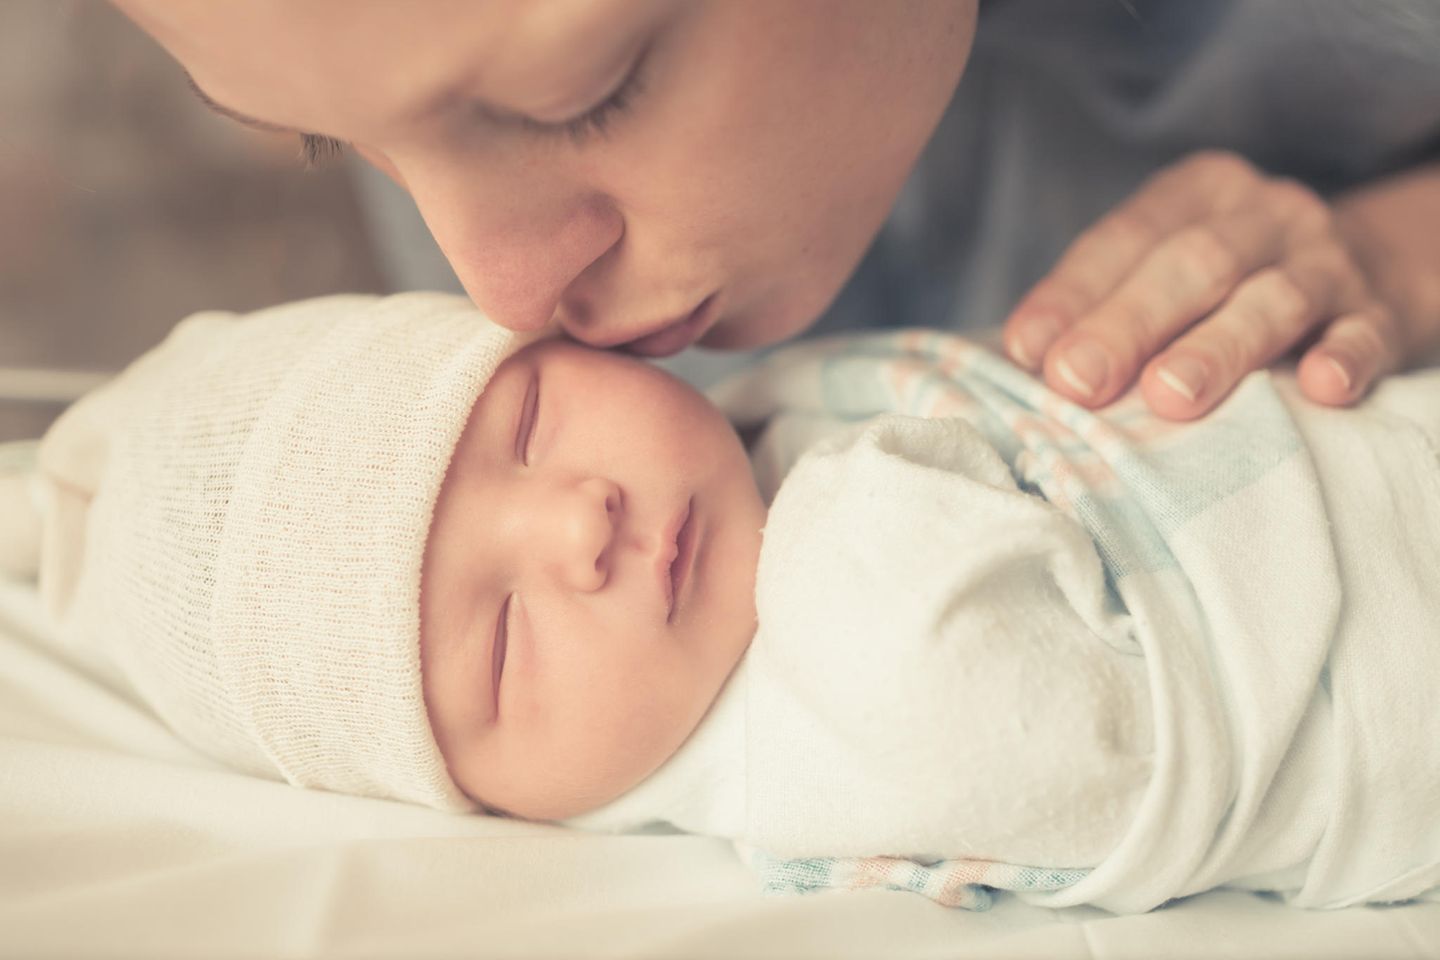 Baby Erstausstattung Geschenk Geburt Set personalisiert Junge blau Neugeborene